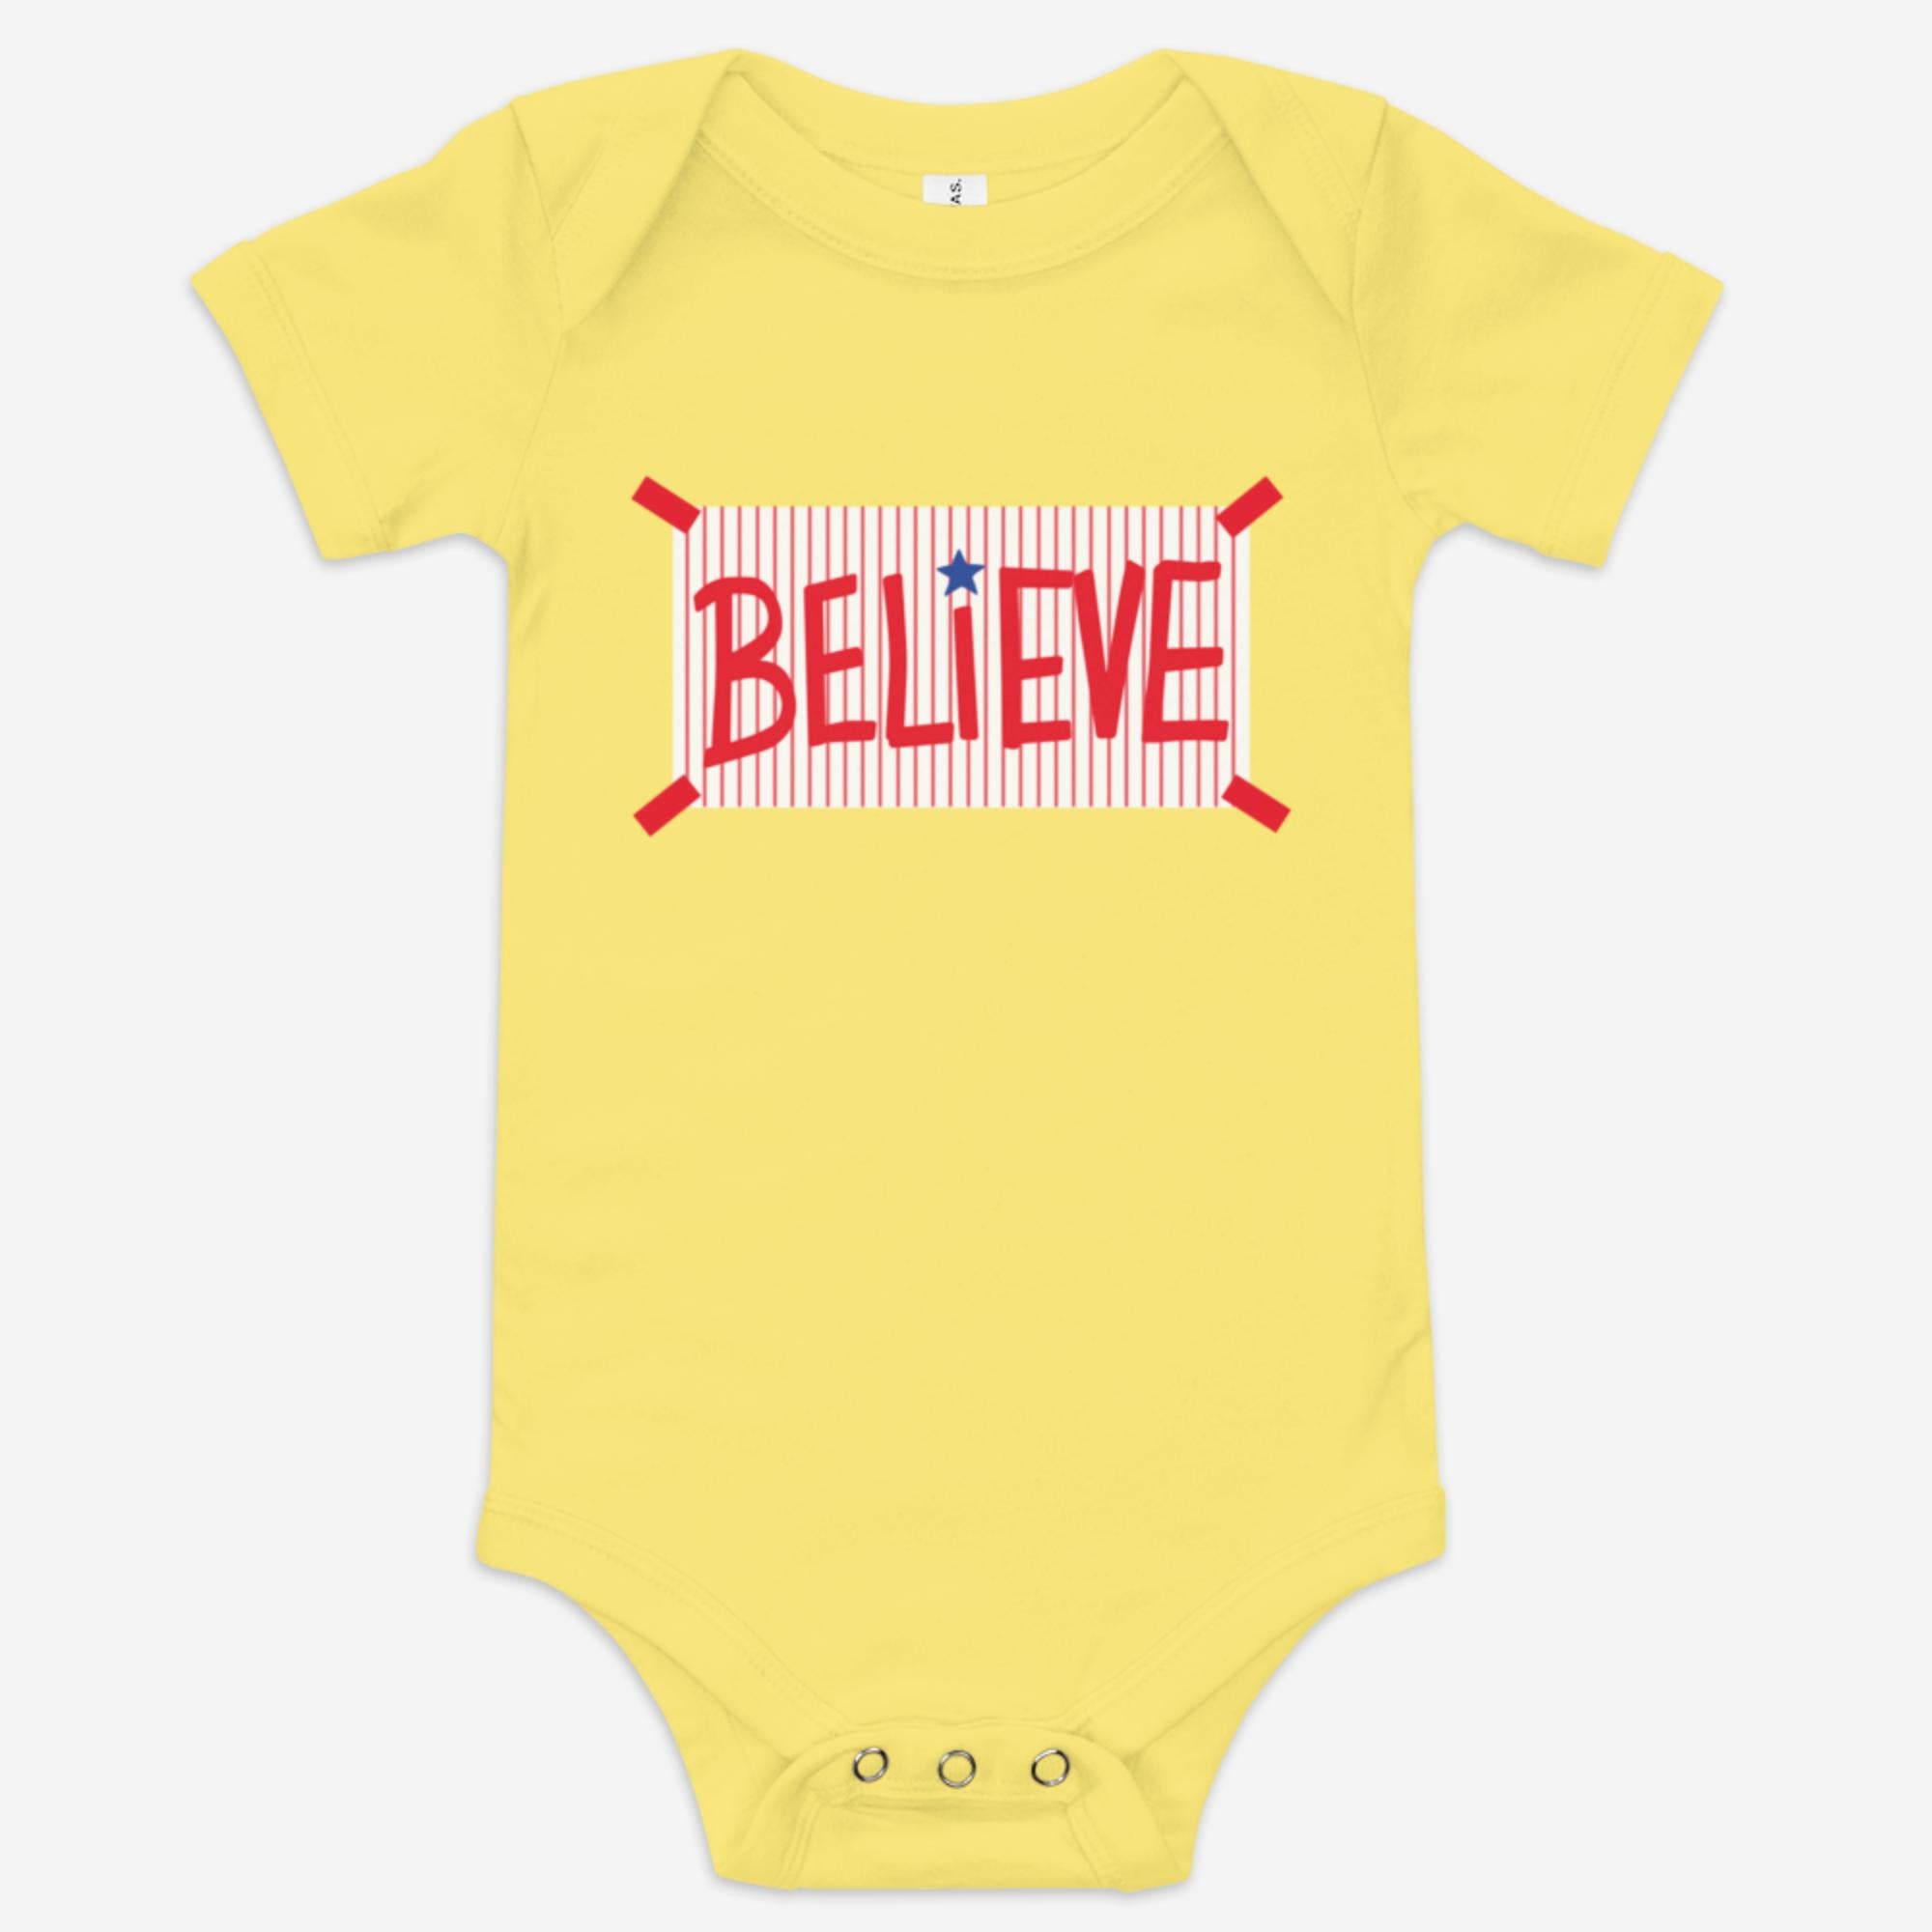 "Believe" Baby Onesie